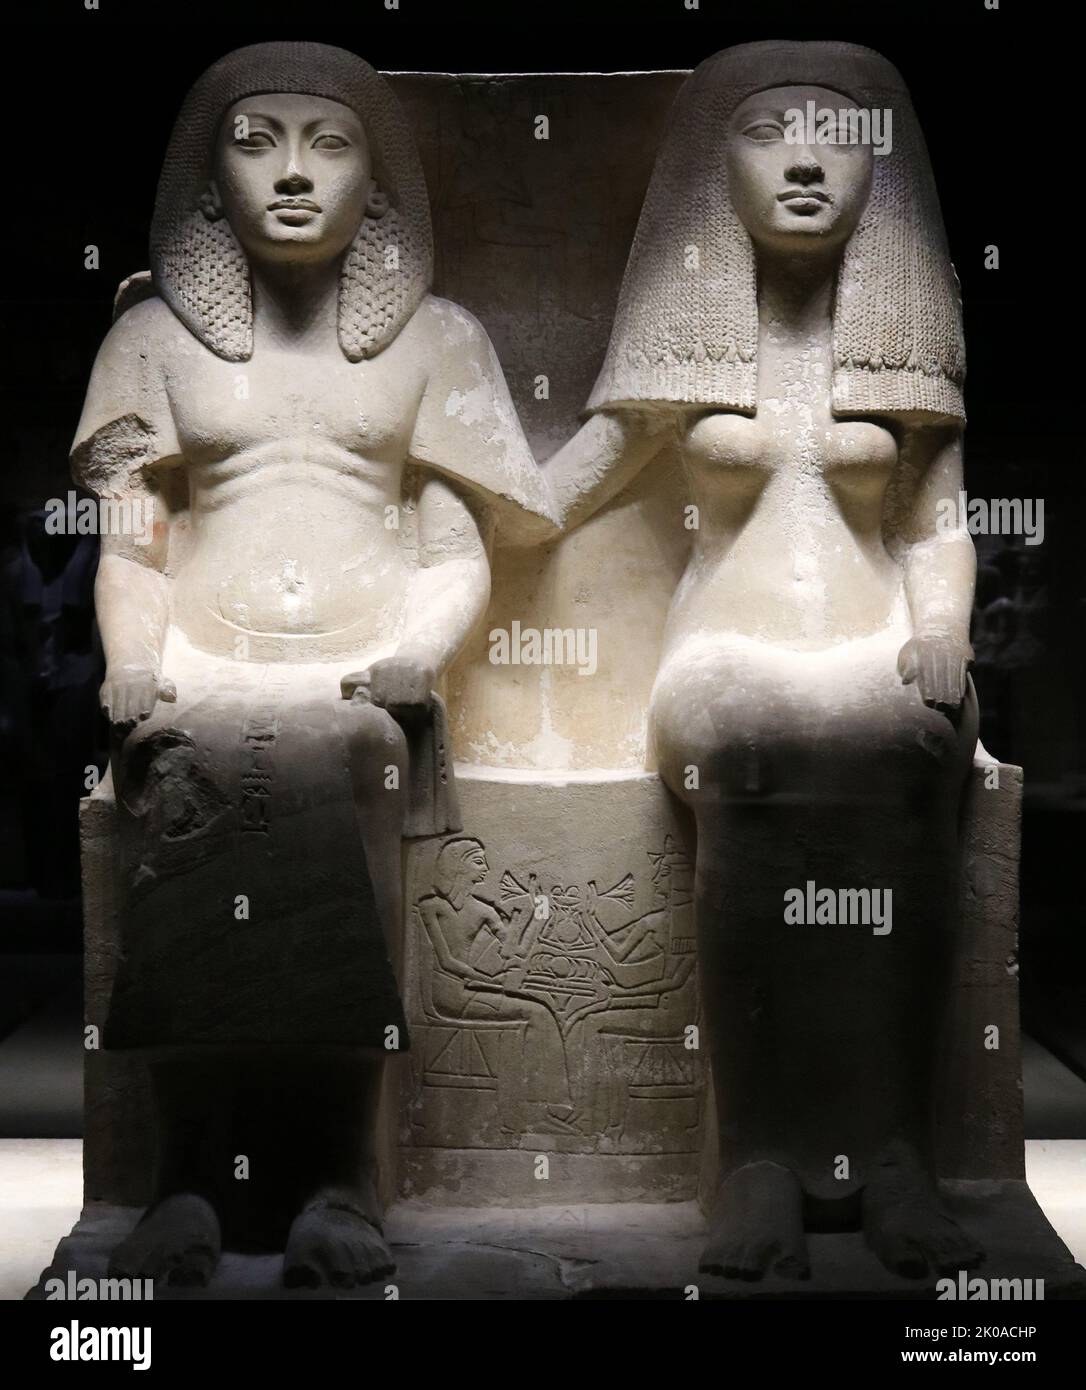 Kalksteinstatue von Tjay und Naya, Neukönigreich, 18. Dynastie (ca. -1295 v. Chr.). Diese hervorragend erhaltene Statue zeigt ein Paar sitzend, und trägt feine Kleidung und aufwendige Perücken, deren komplizierte Details vom Bildhauer originalgetreu dargestellt werden. Naya hat liebevoll ihre rechte Hand auf der Schulter ihres Mannes. Auf der Rückseite ist das Paar in Relief sitzend an einem Opfertisch mit Blick auf die Dame 'Tinr' zu sehen. Giza, Memphite-Region, Saqqara. Sharm al-Sheikh Museum, Ägypten. Stockfoto